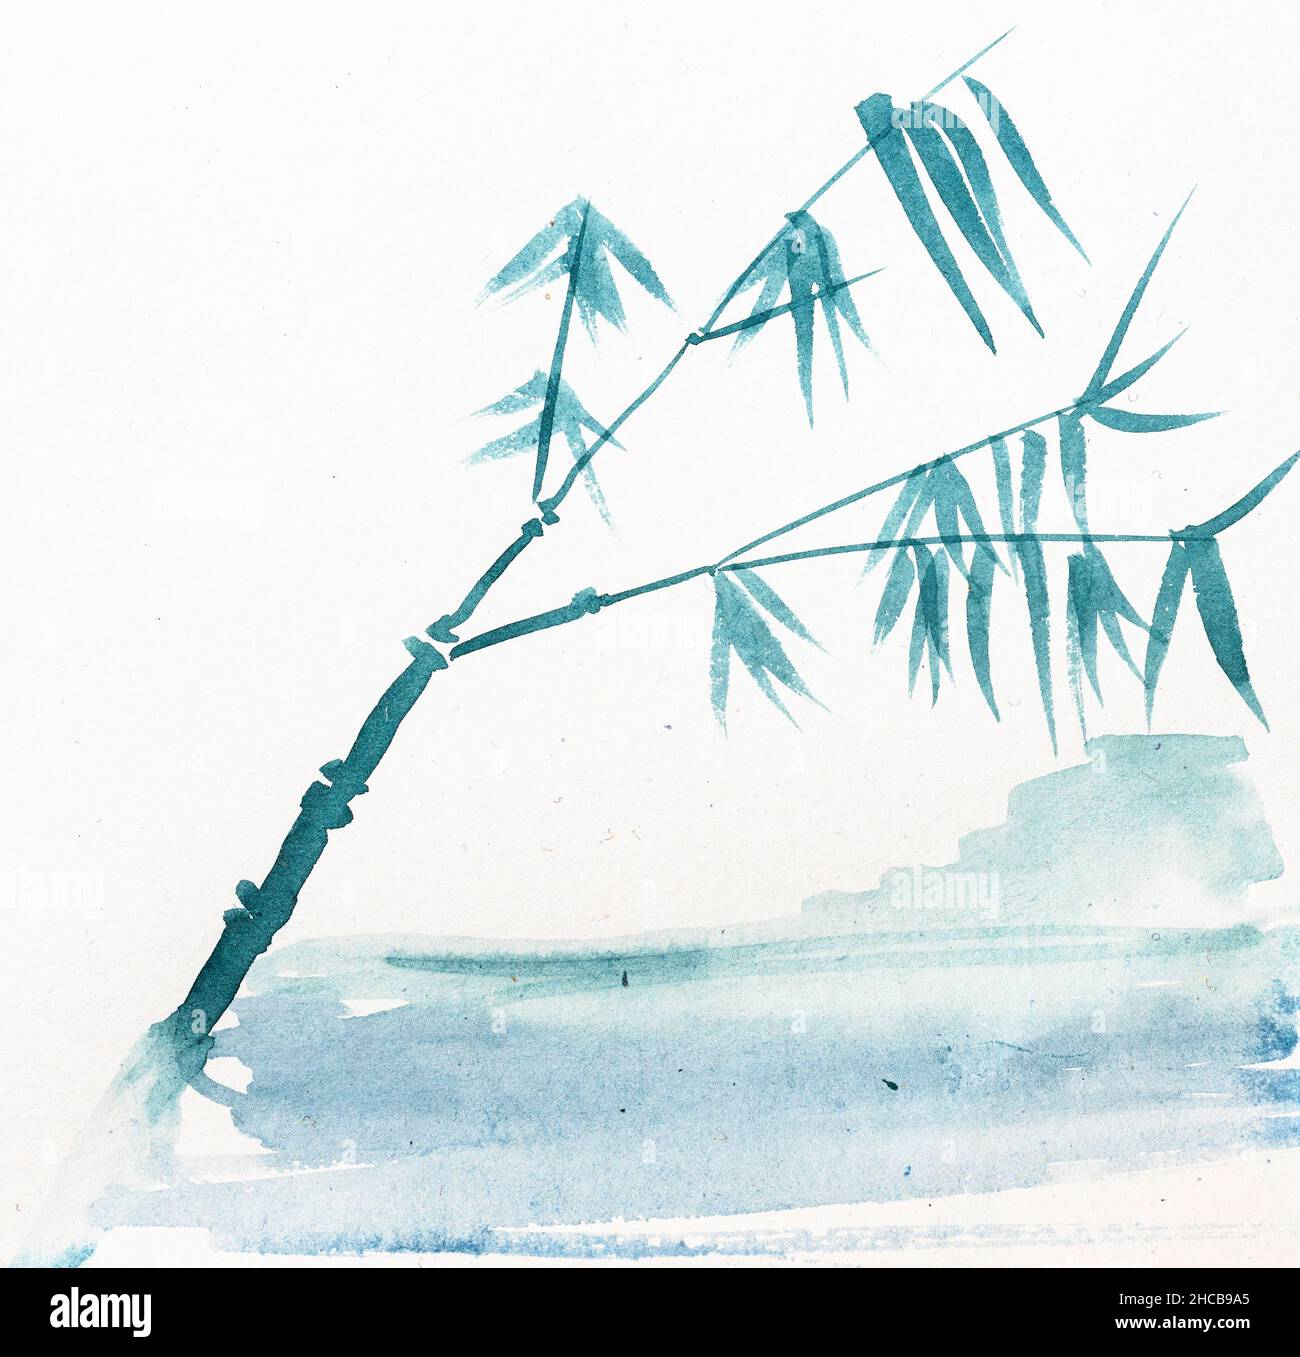 croquis de canne sur la côte de mer dessiné à la main par aquarelle sur papier blanc texturé en technique sumi-e. Banque D'Images